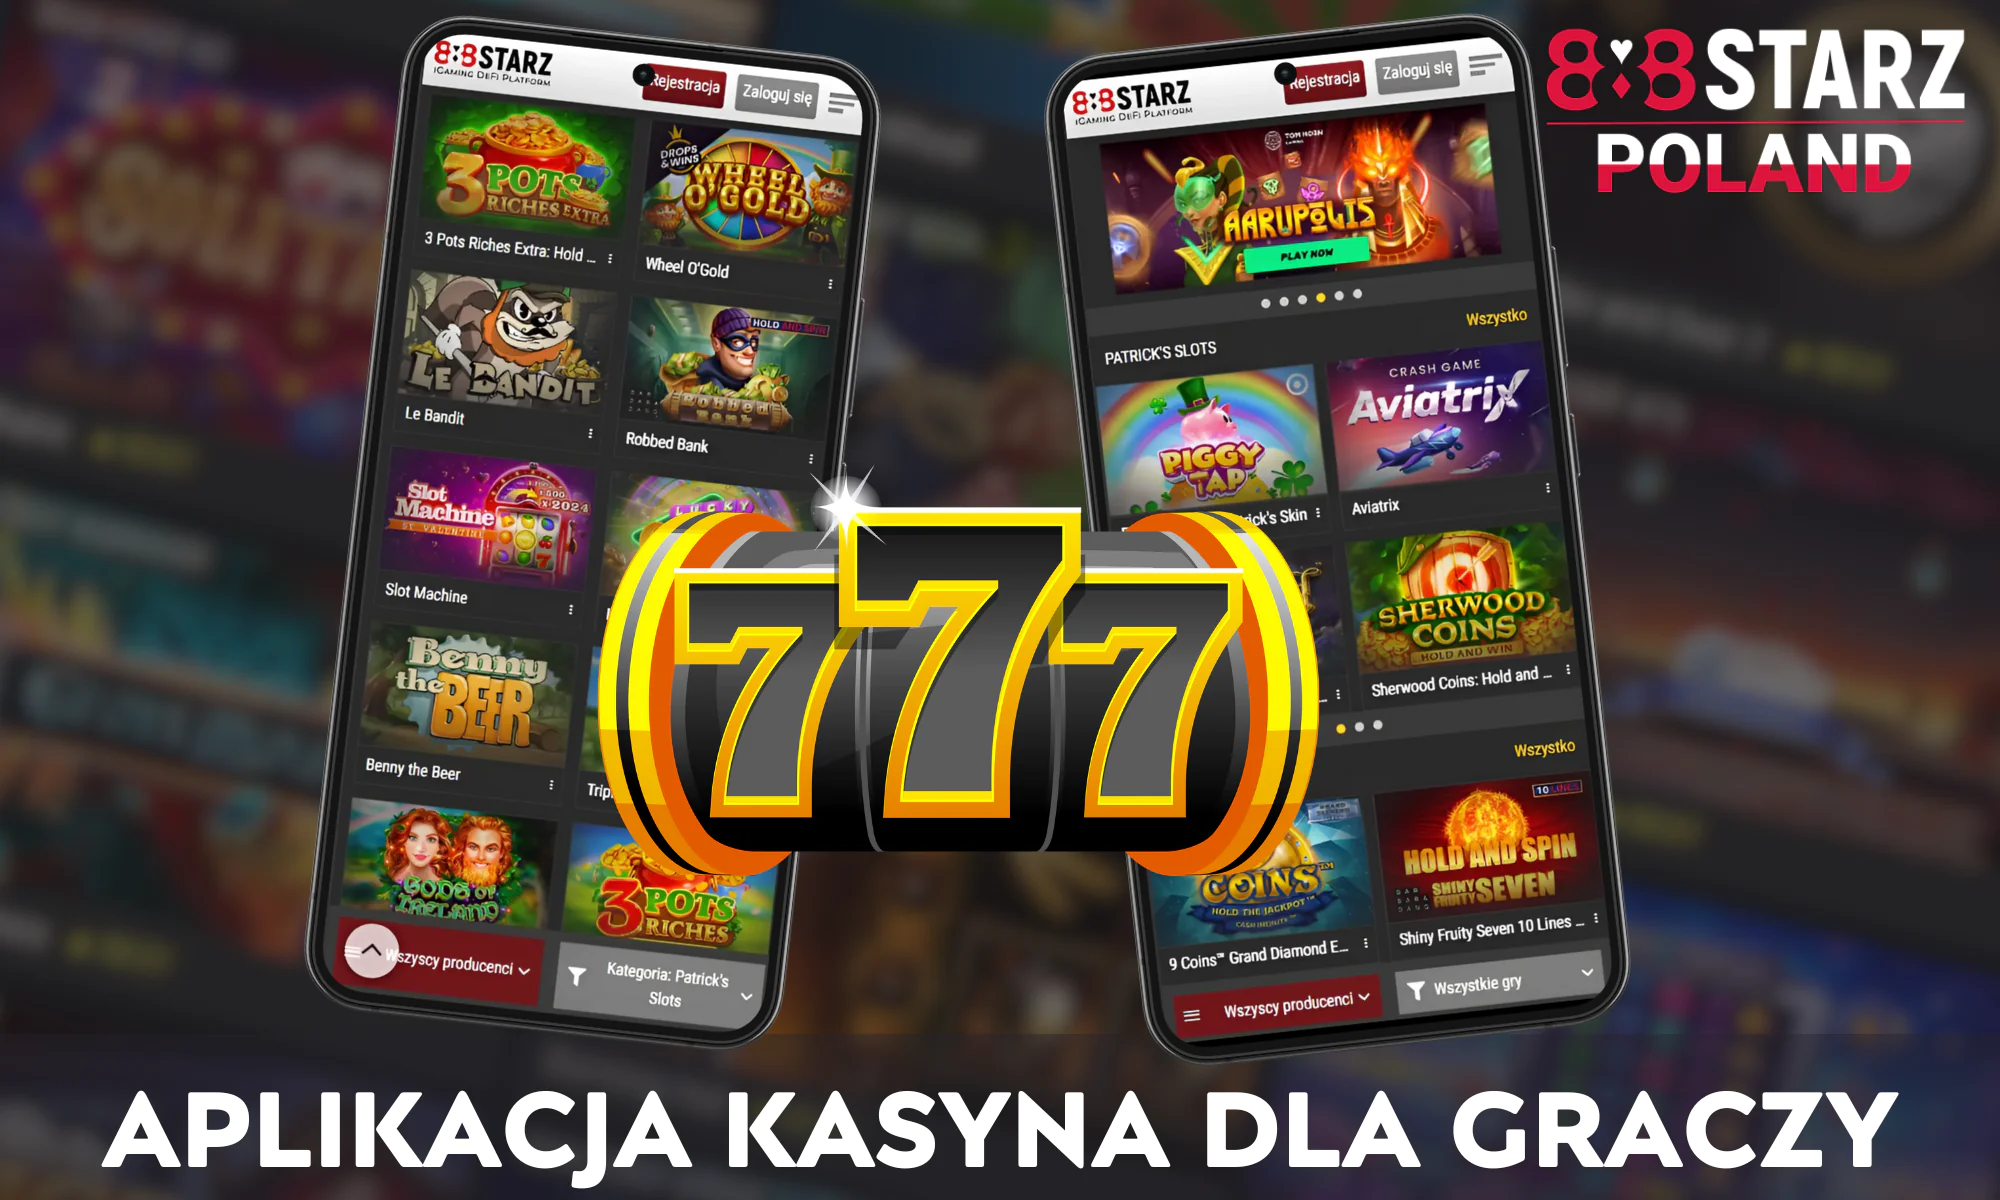 Aplikacja kasyna 888Starz w Polsce oferuje imponującą gamę ponad 2000 różnych gier